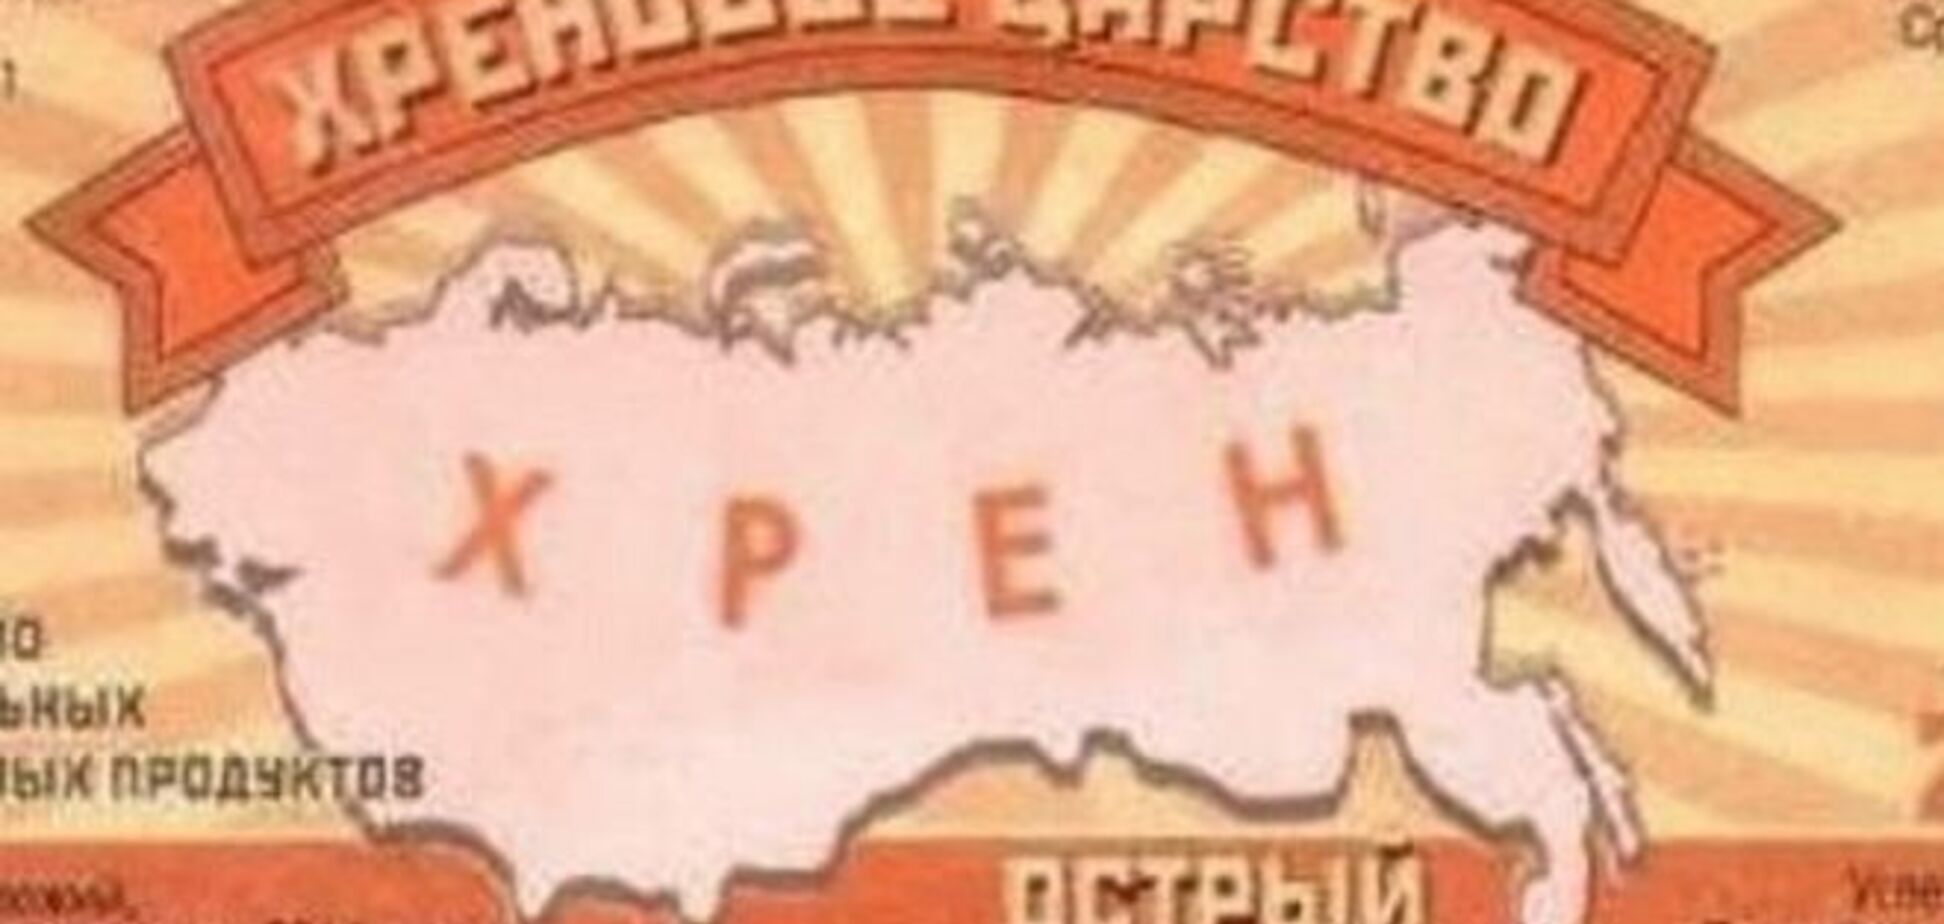 'Икра Путина' и 'Хреновое царство': подборка маразмов из российских магазинов